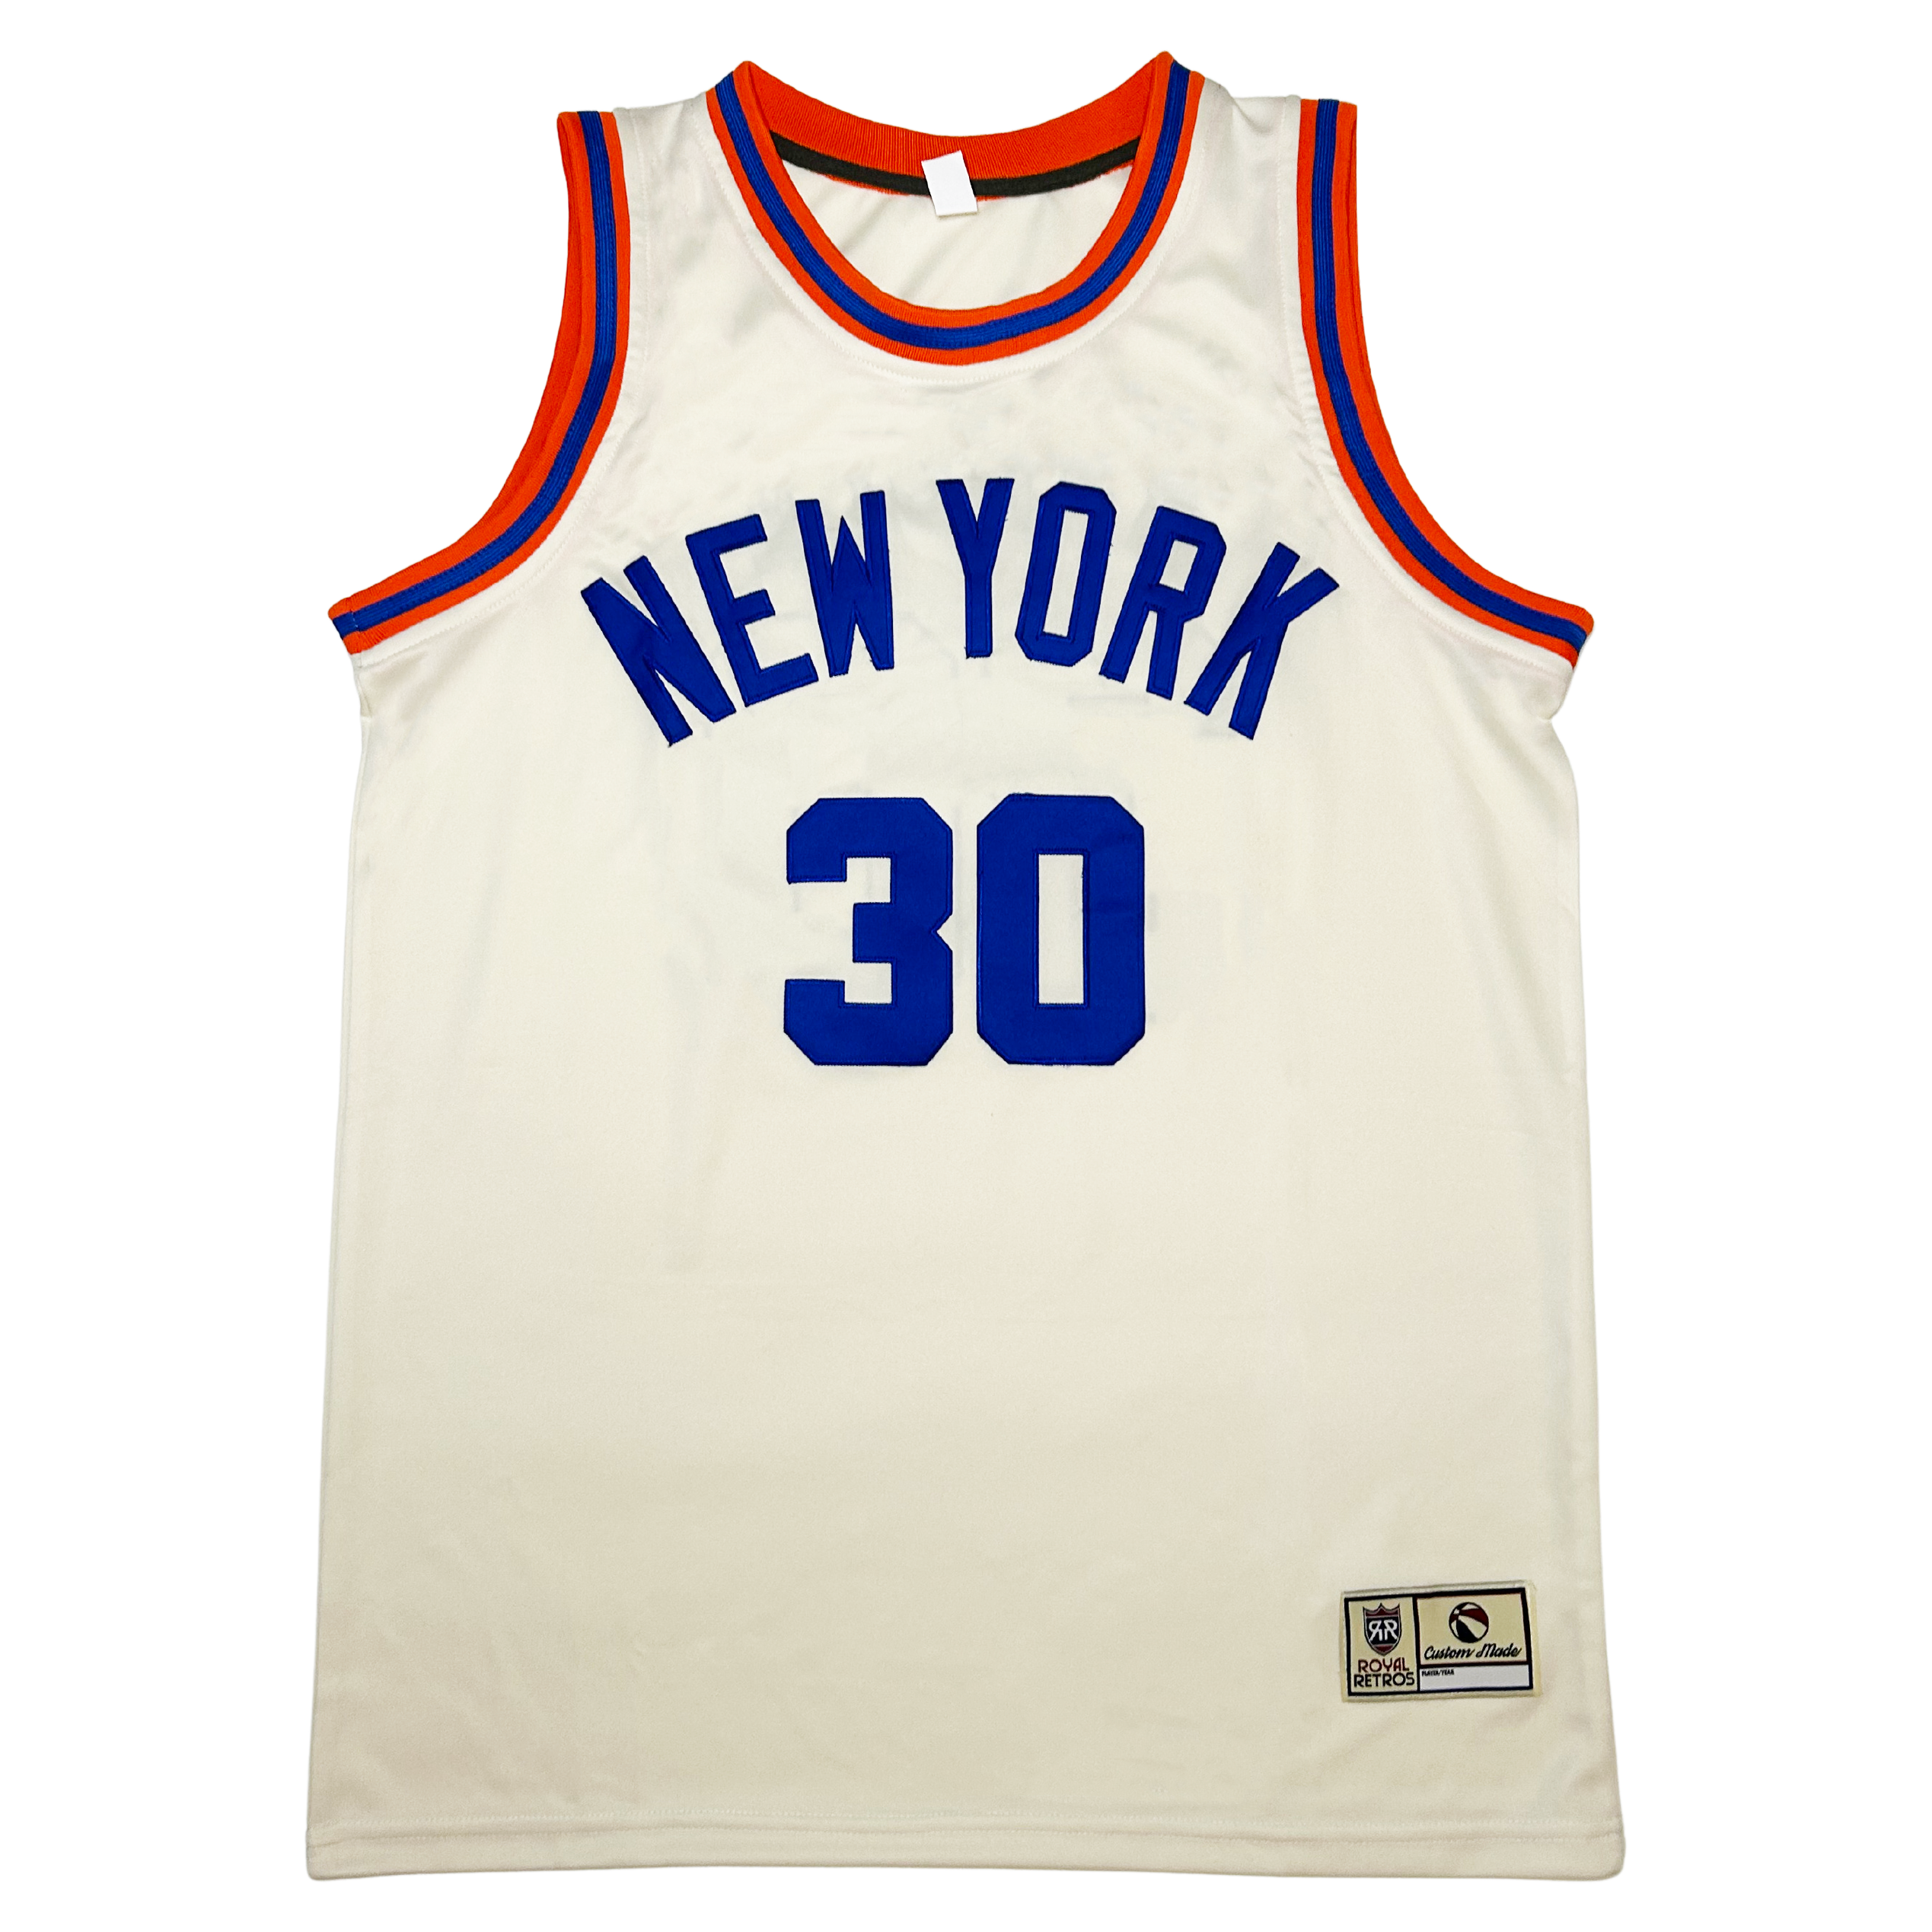 New York Cream Collection Basketball Jersey – Royal Retros